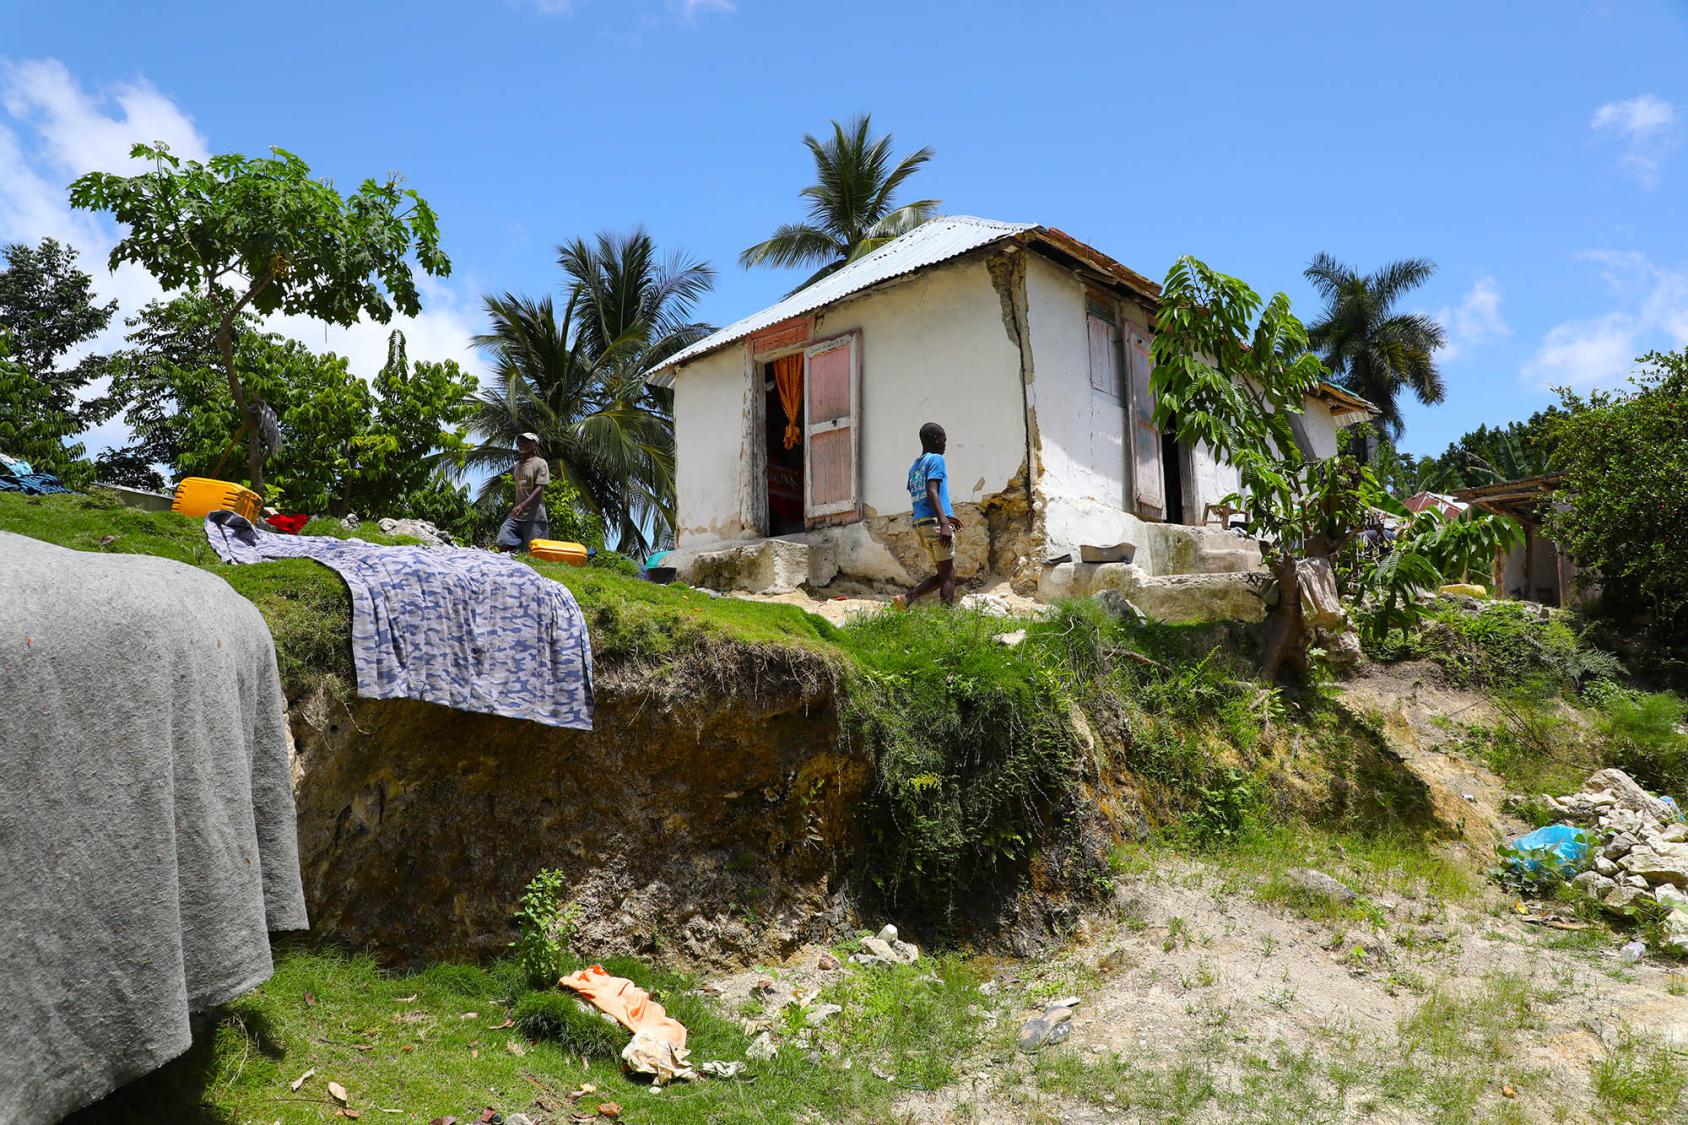 一个人站在一个白色的房子附近，房子里有几件衣服被摆在山上风干。